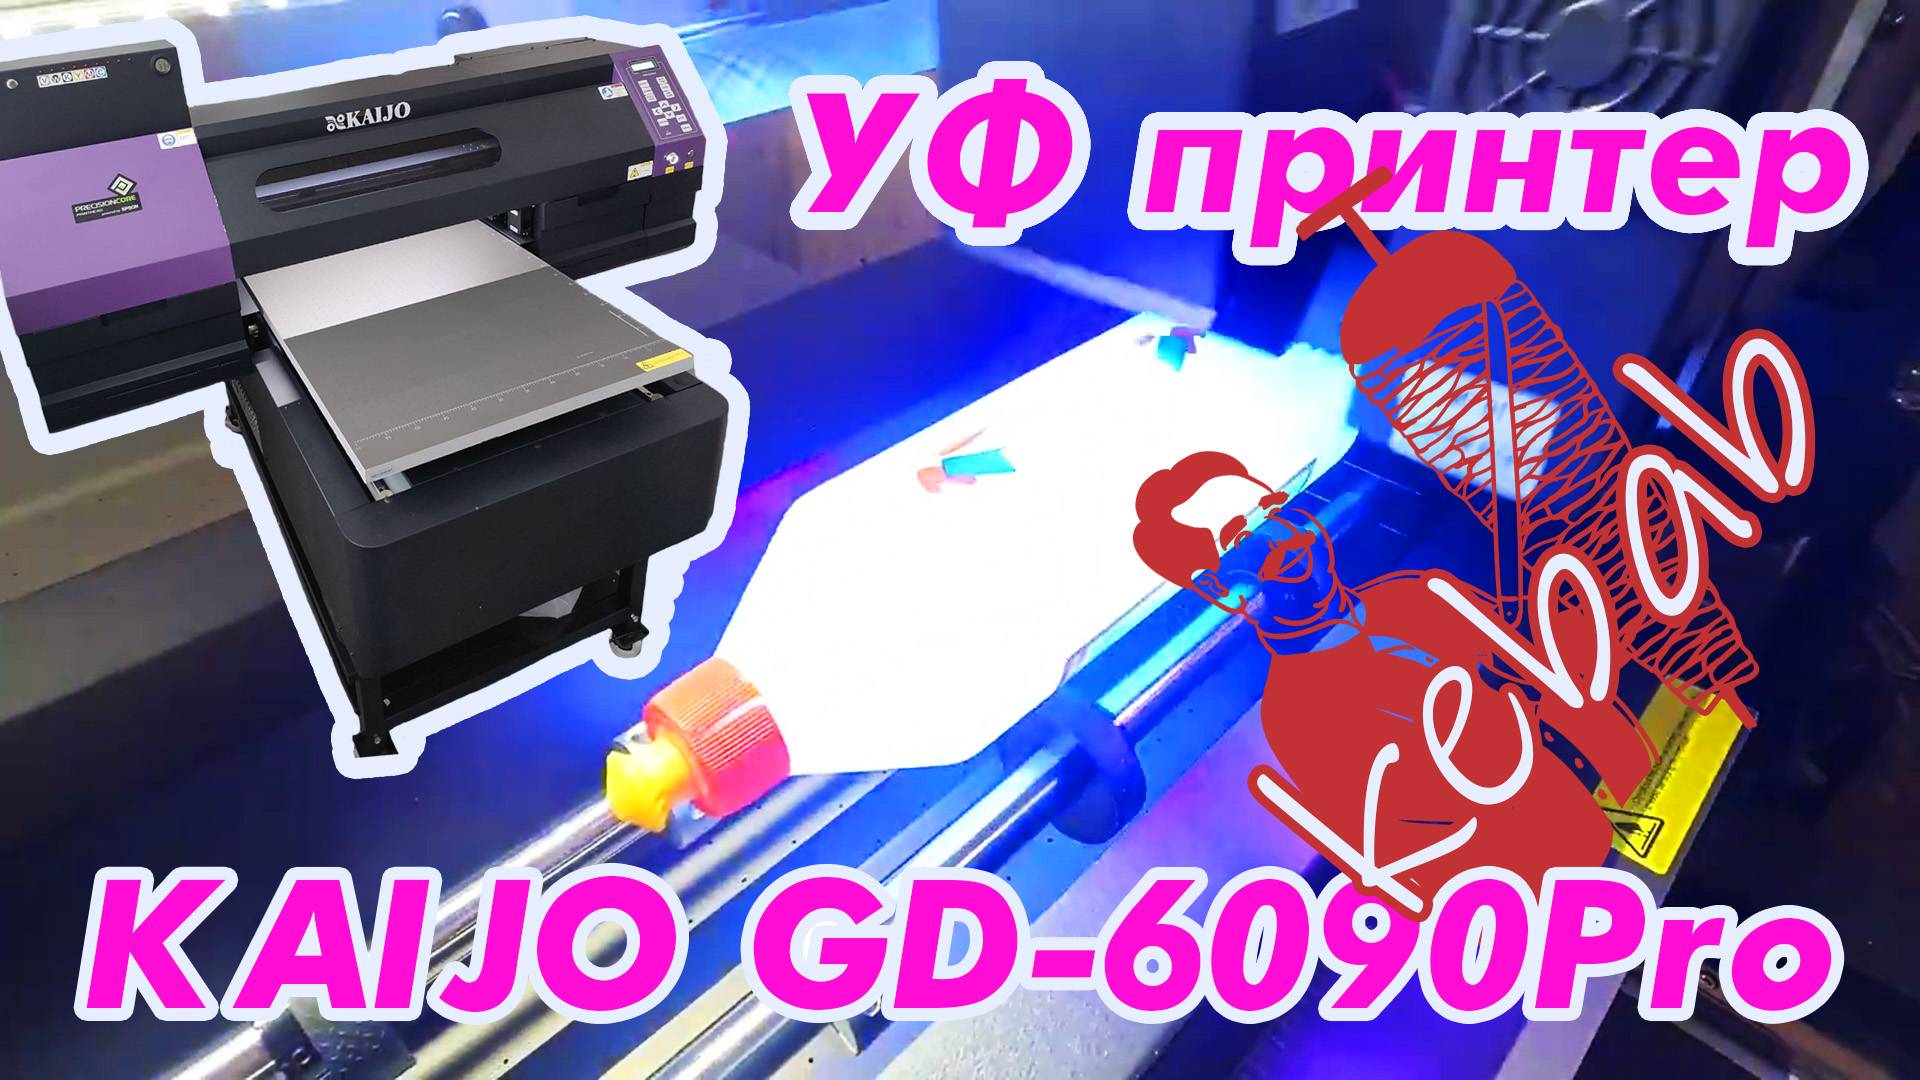 УФ принтер KAIJO GD-6090Pro с опцией Kebab для печати на цилиндрических объектах